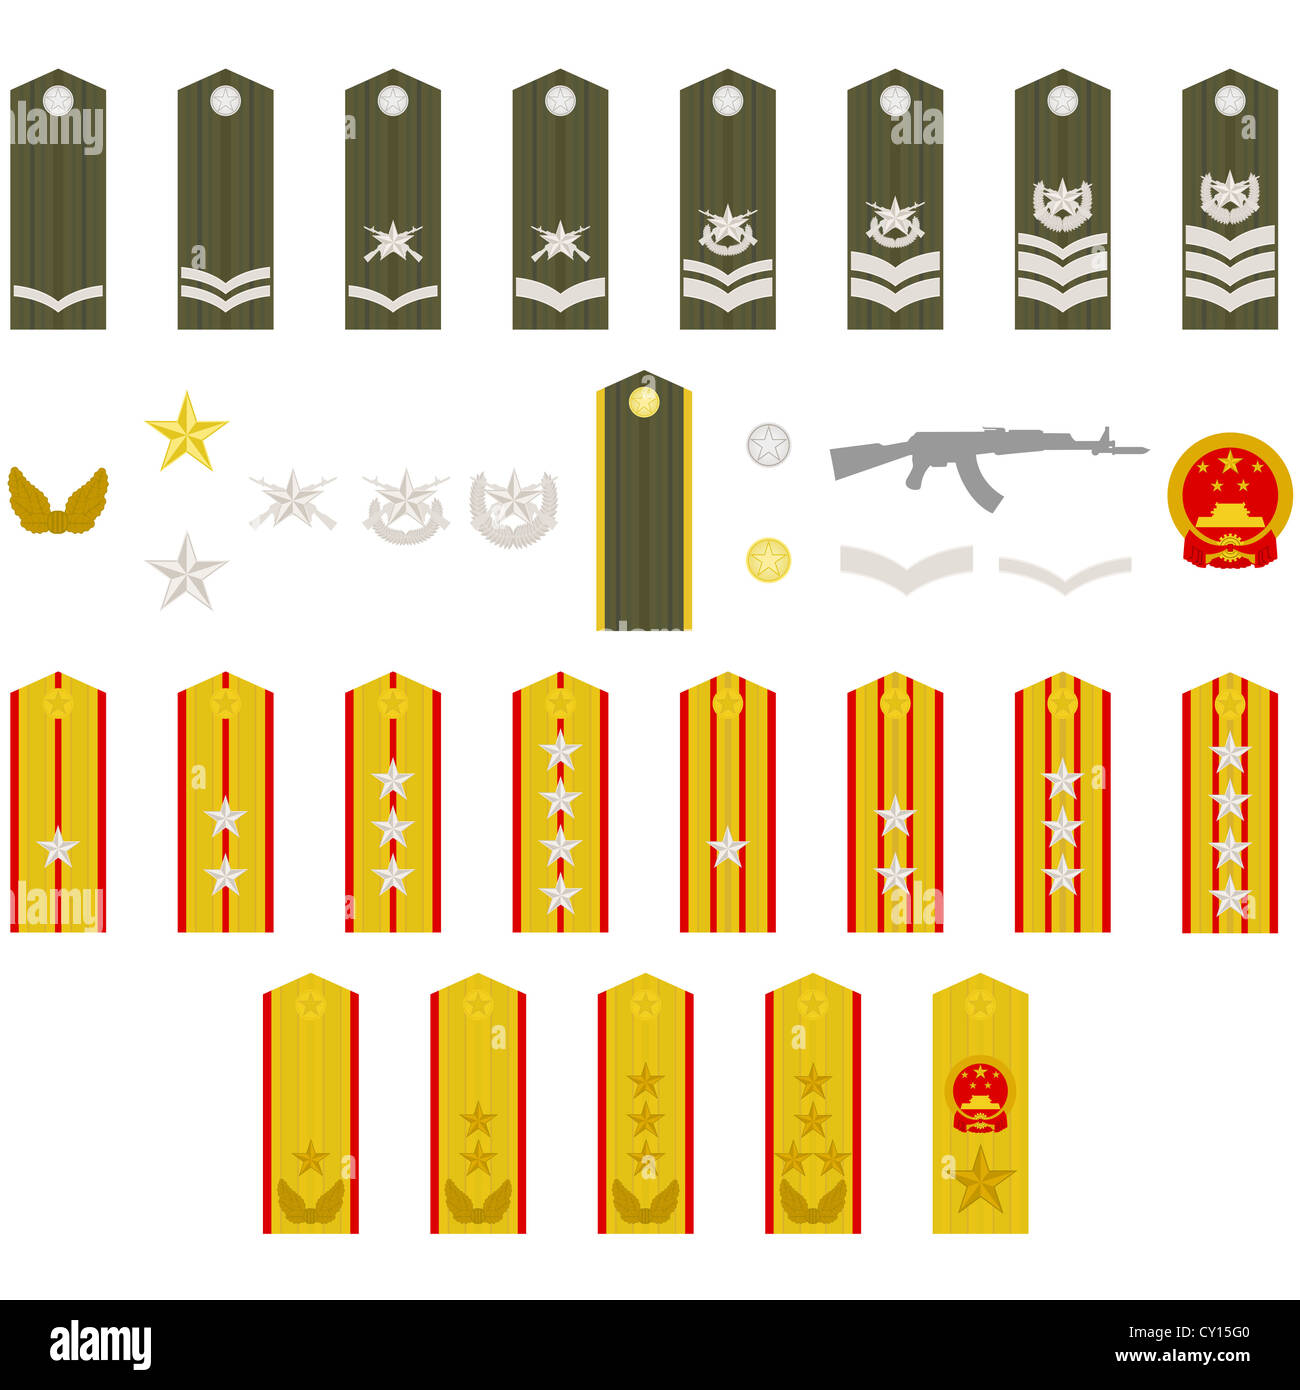 Epauletten, militärische Ränge und Abzeichen. Abbildung auf weißem Hintergrund. Stockfoto